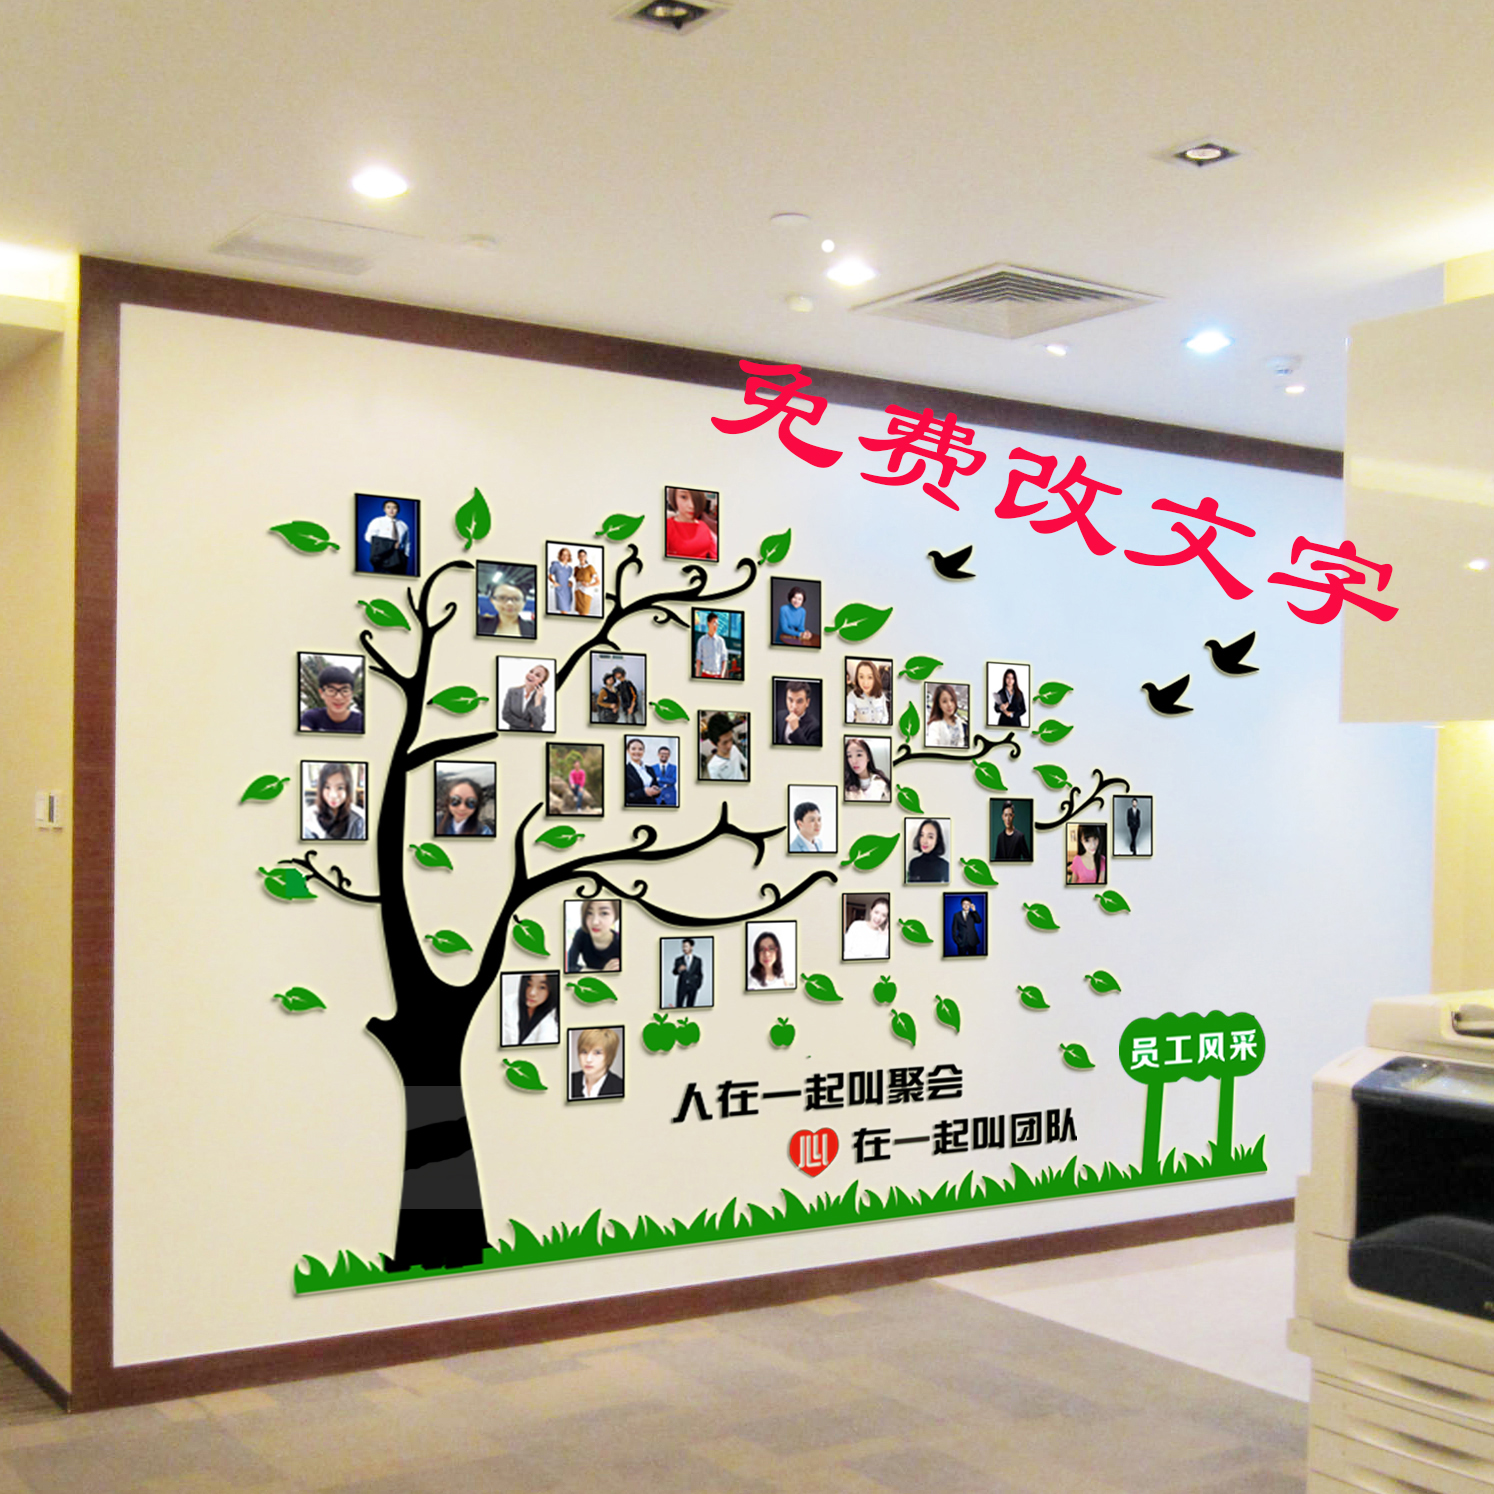 立体亚克力大树照片墙公司团队办公室励志墙贴装饰员工风采文化墙